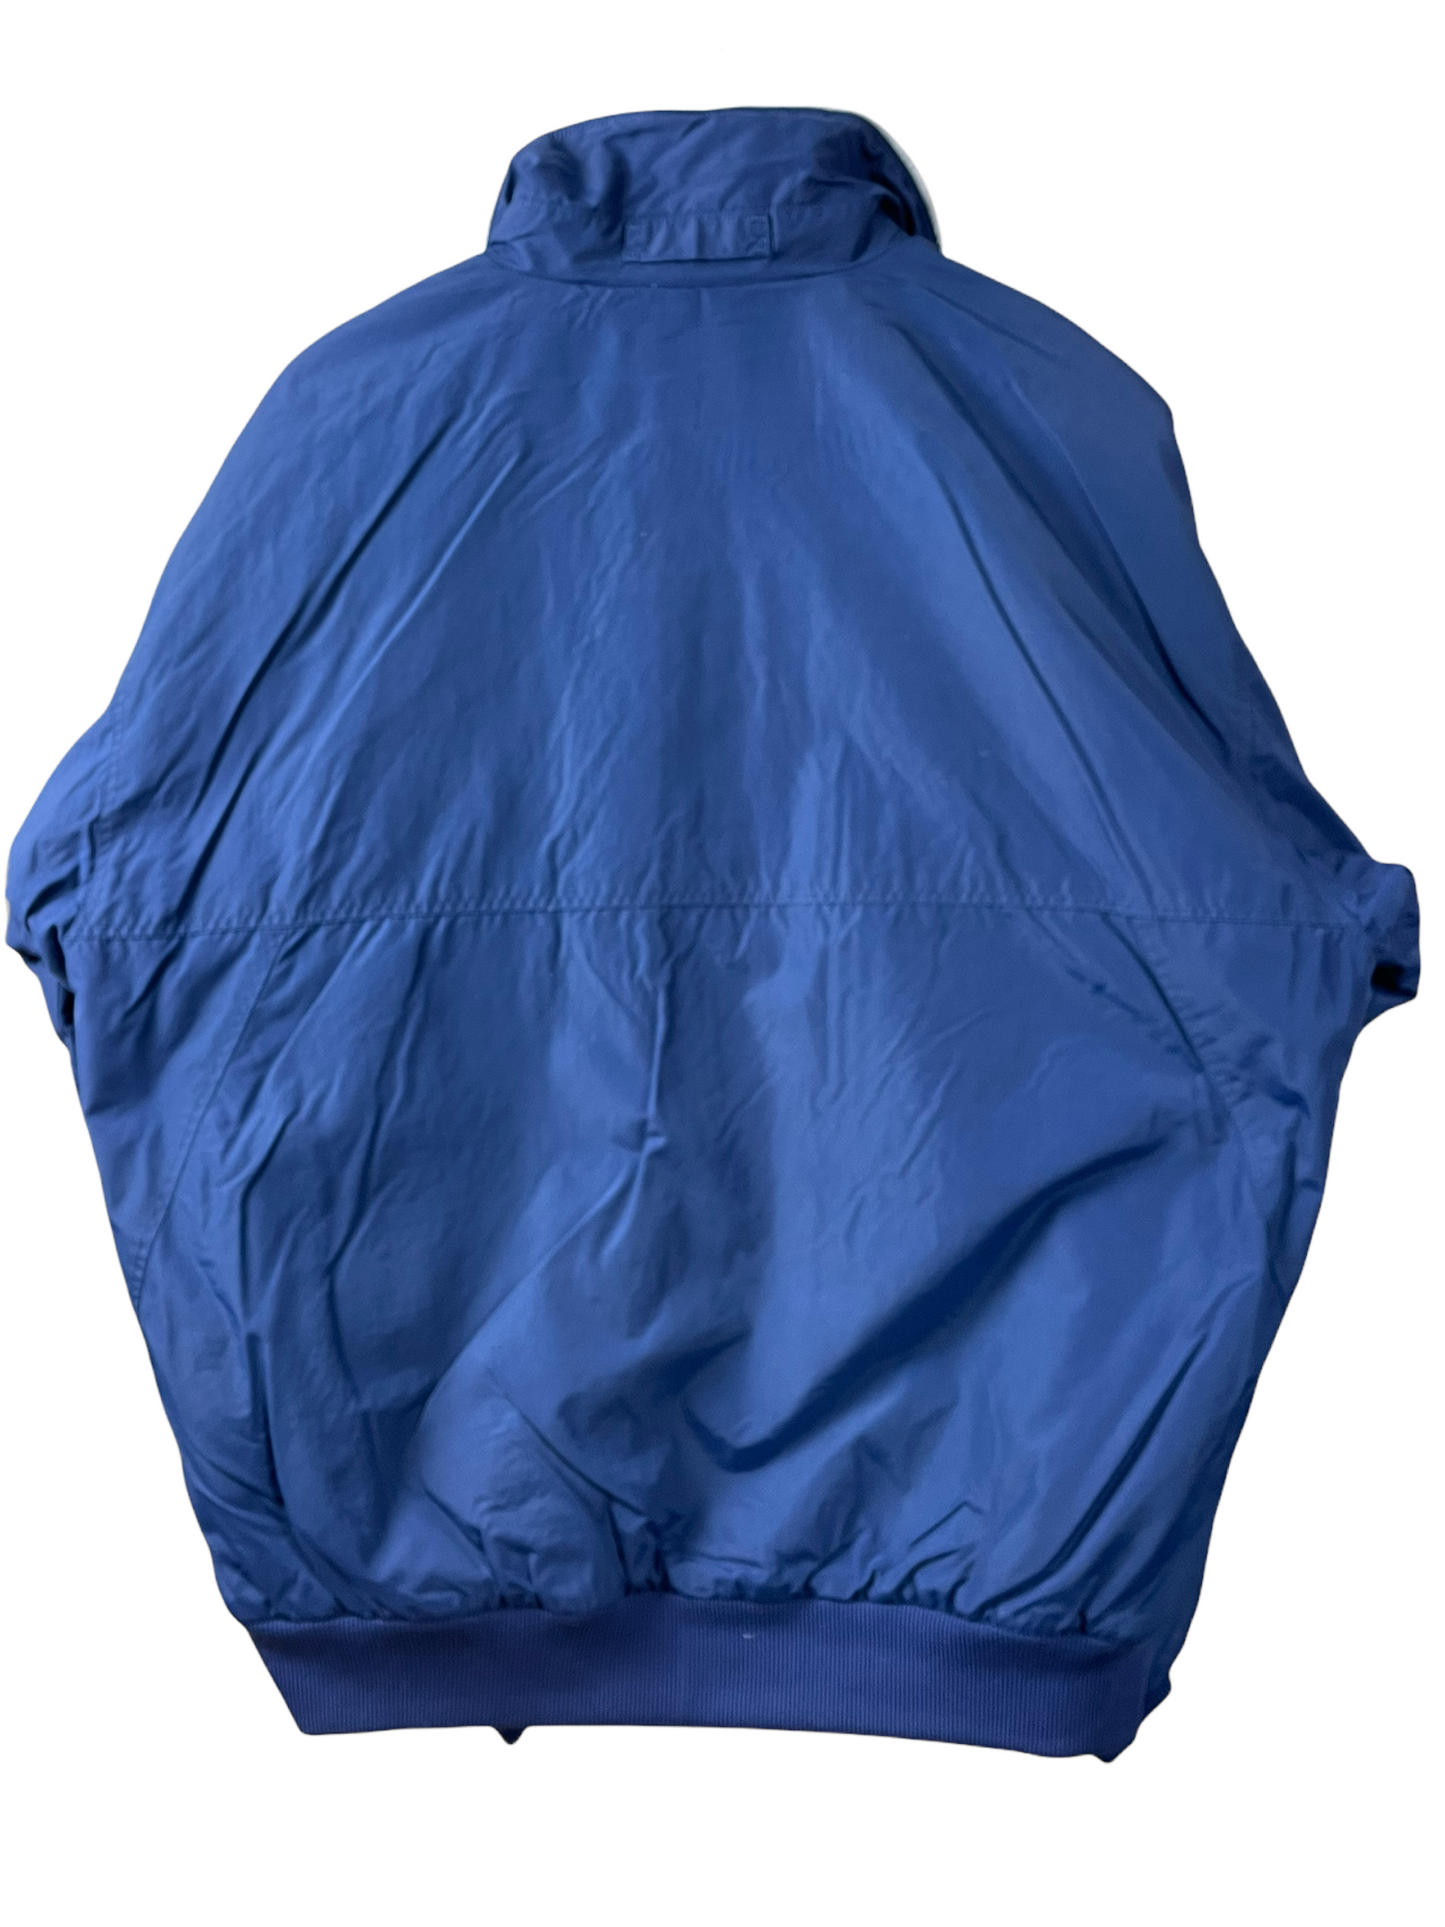 Patagonia Jacket Blue L